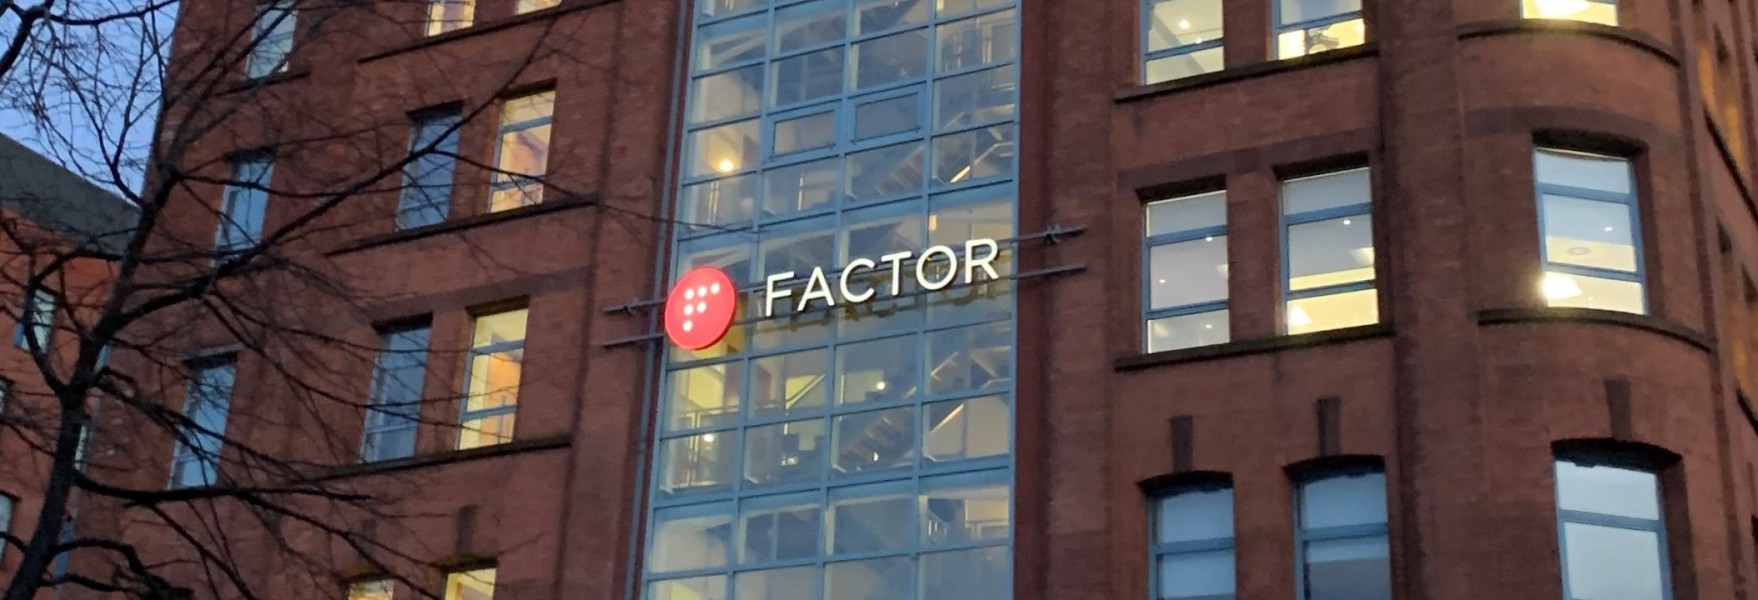 Factor headquarters